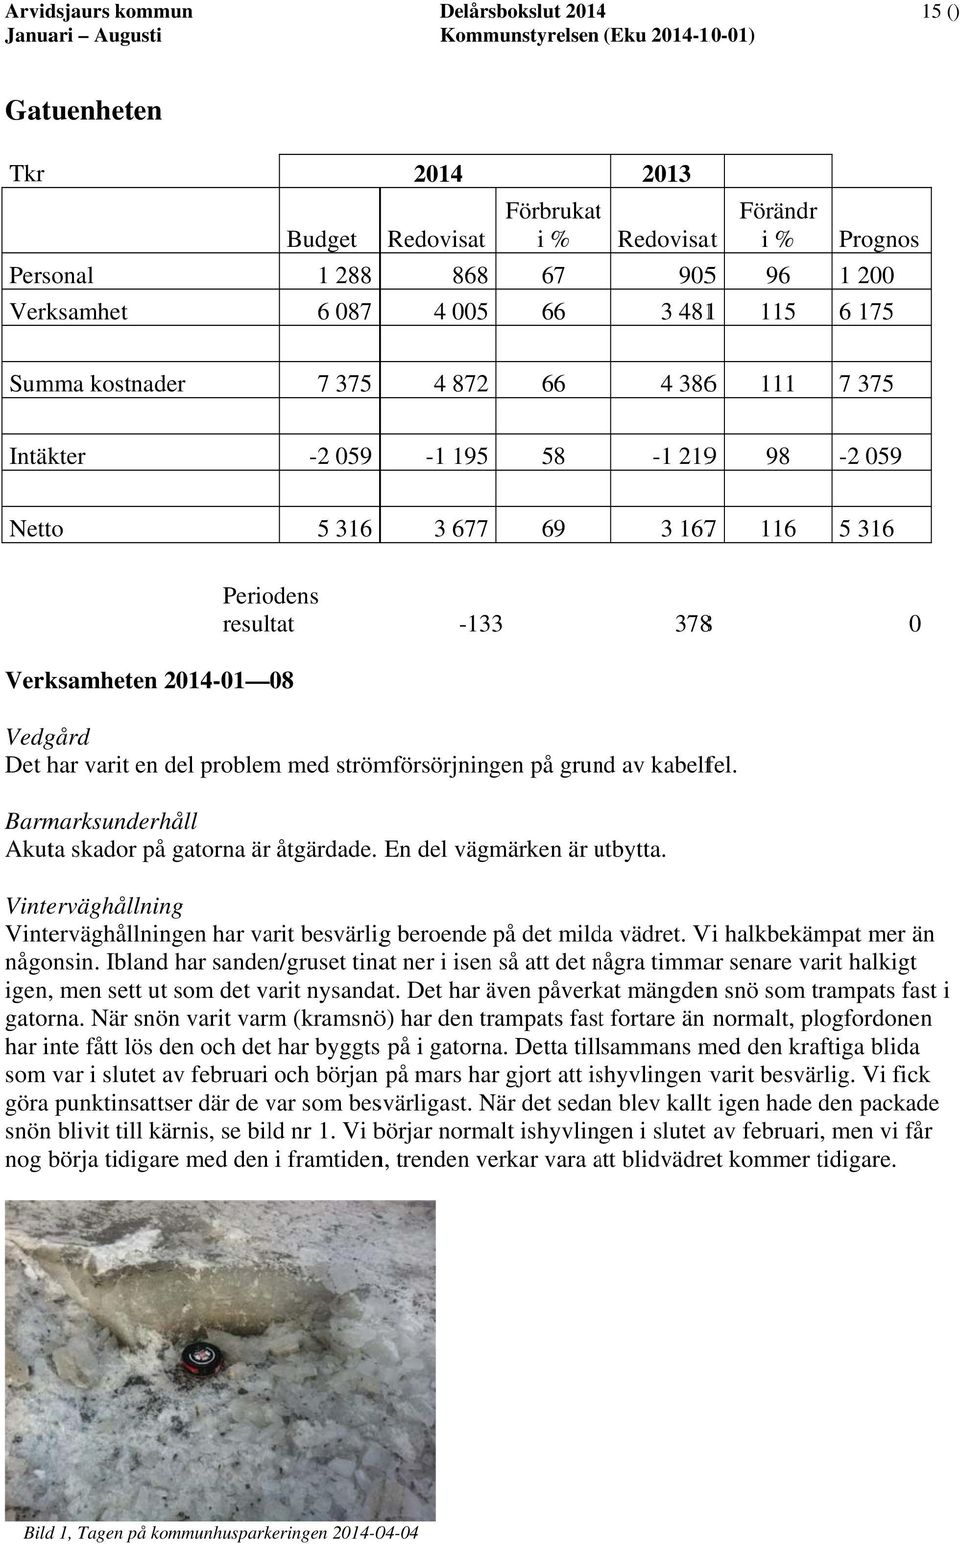 Periodens resultat -133 3788 0 Verksamheten 2014-01 08 Vedgård Det har varit en del problem med strömförsörjningen på grund av kabelfel. Barmarksunderhåll Akuta skador på gatorna är åtgärdade.